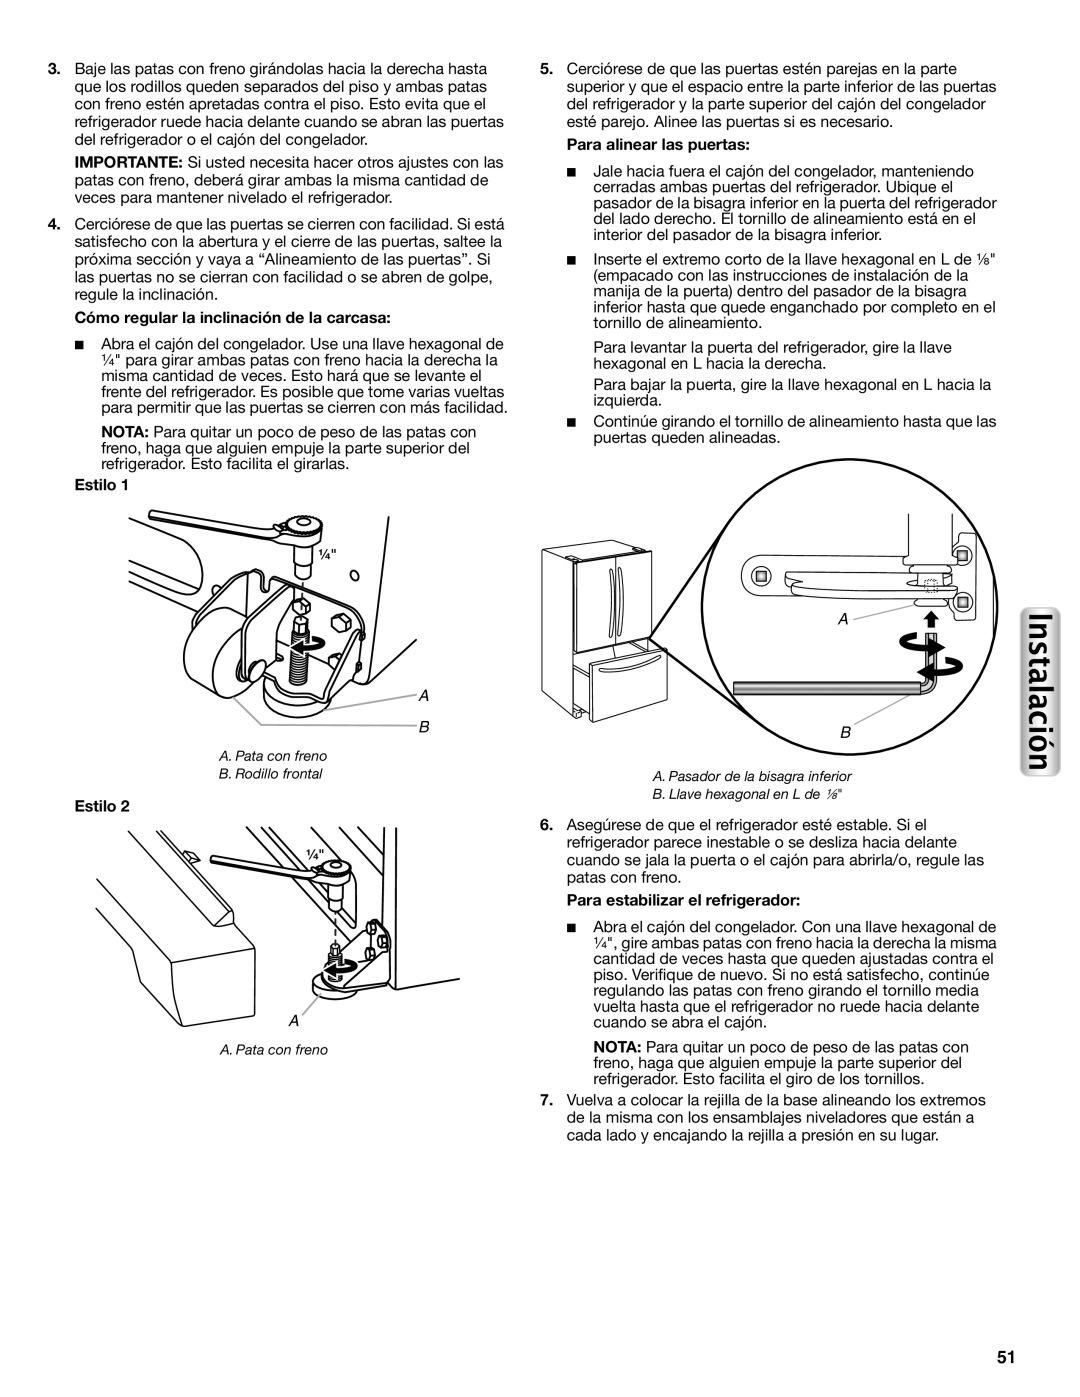 Maytag W10558104A manual Cómo regular la inclinación de la carcasa, Estilo, Para alinear las puertas 